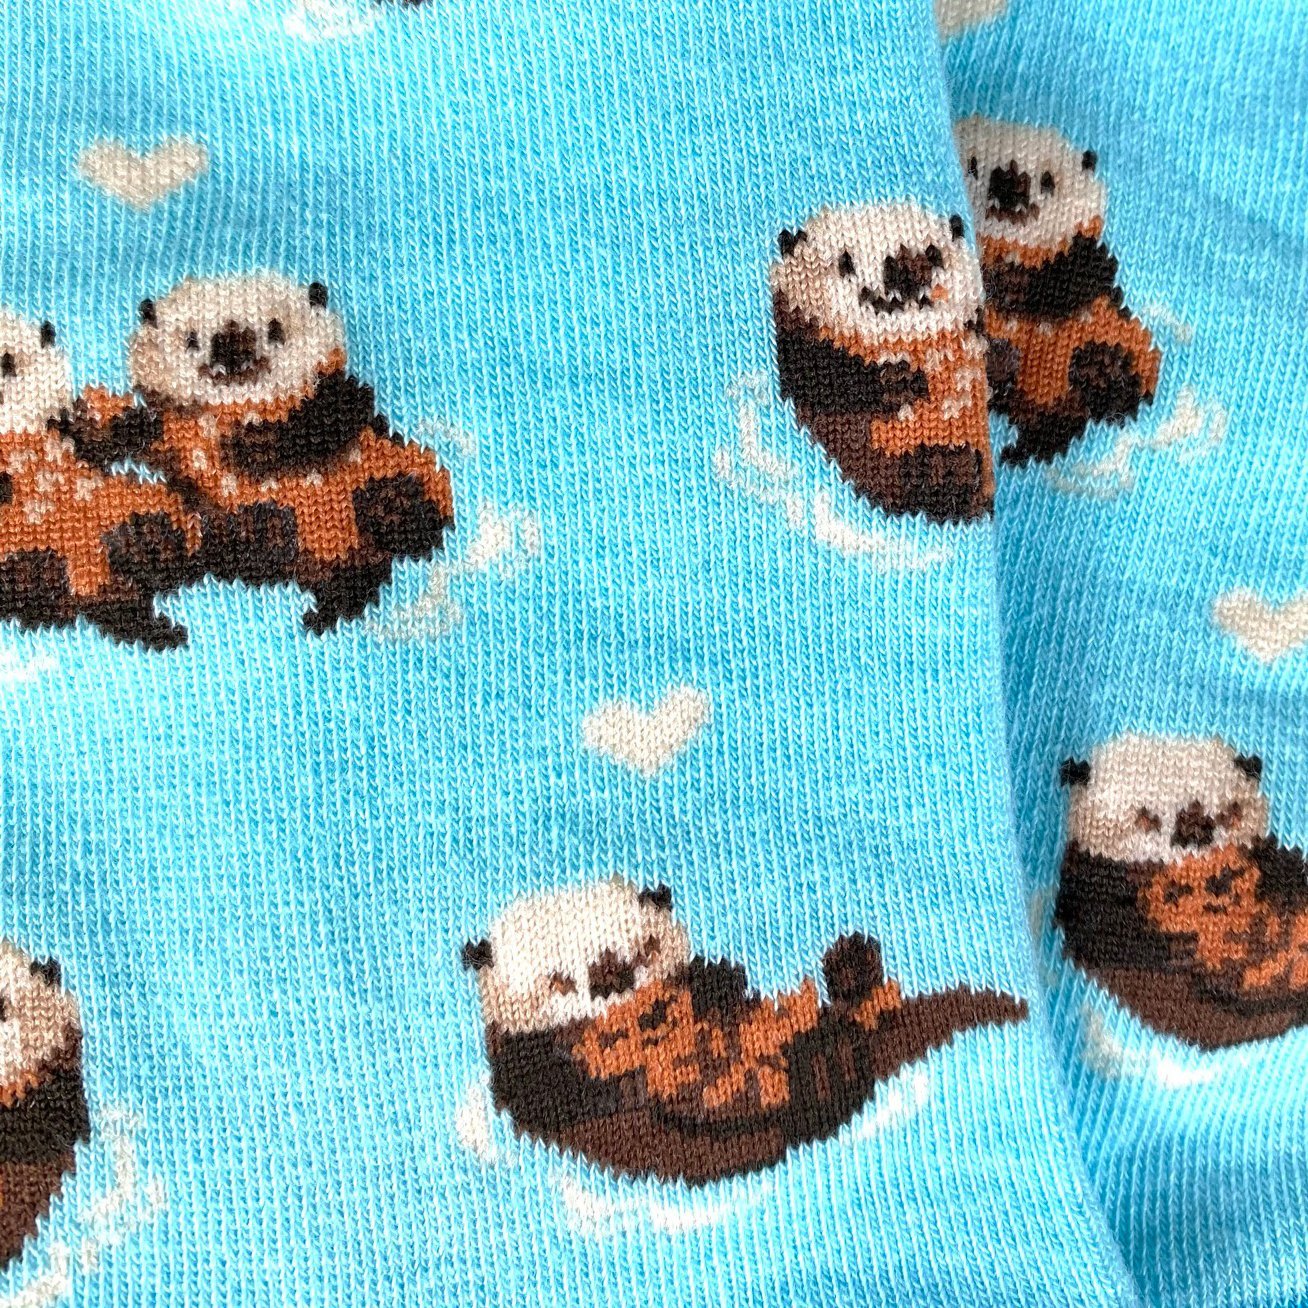 Sea Otter Socks - Imagery Socks